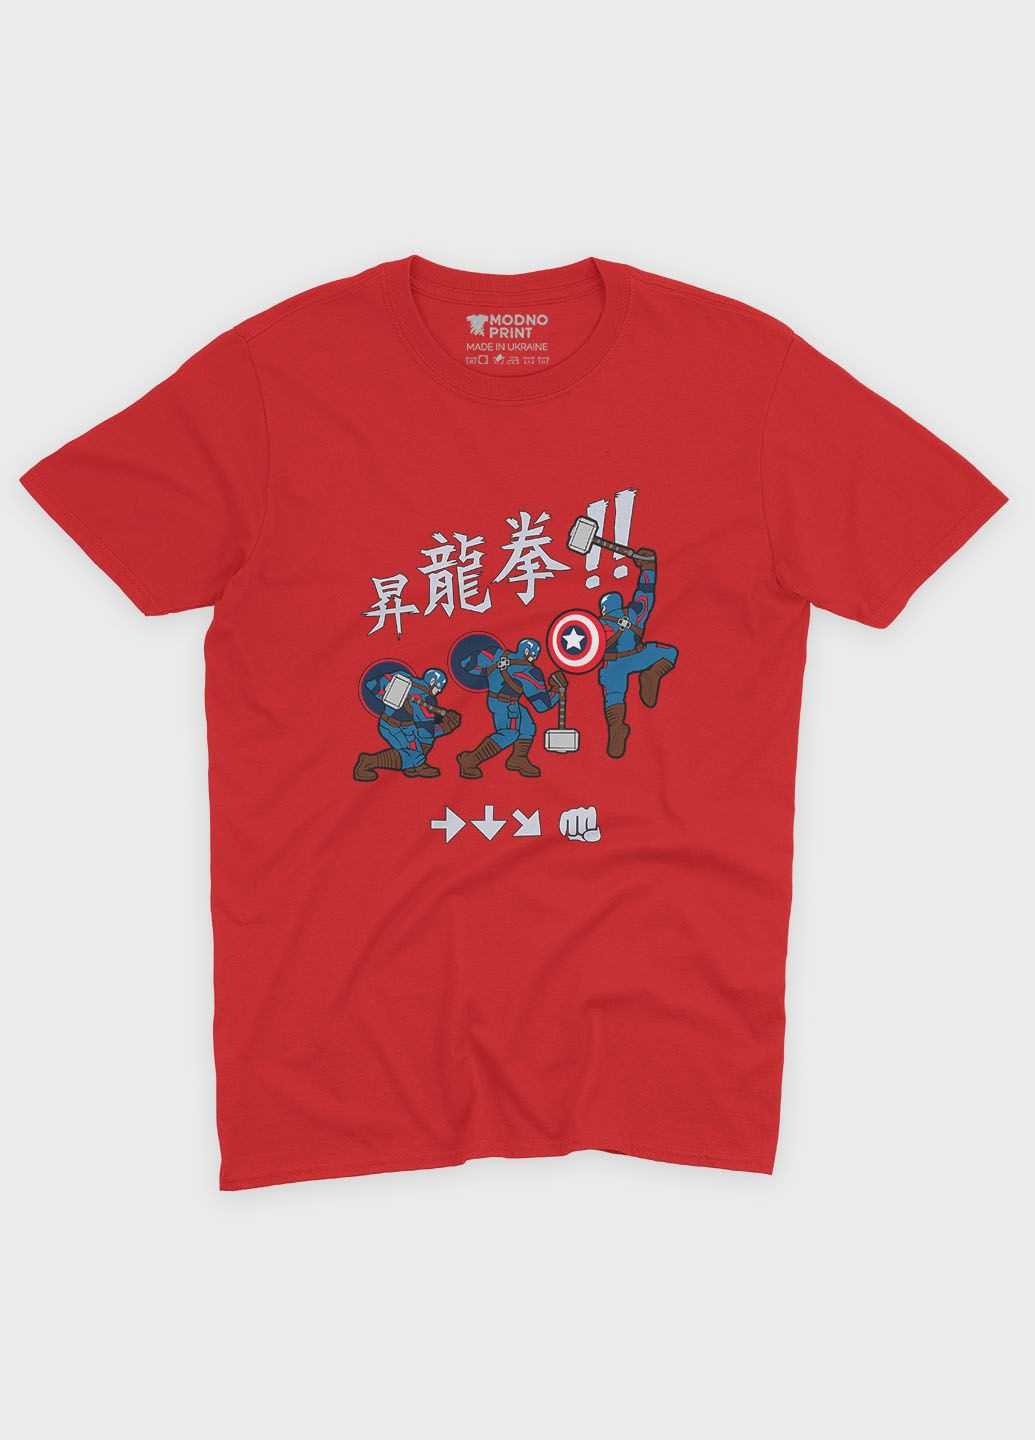 Червона демісезонна футболка для хлопчика з принтом супергероя - капітан америка (ts001-1-sre-006-022-009-b) Modno